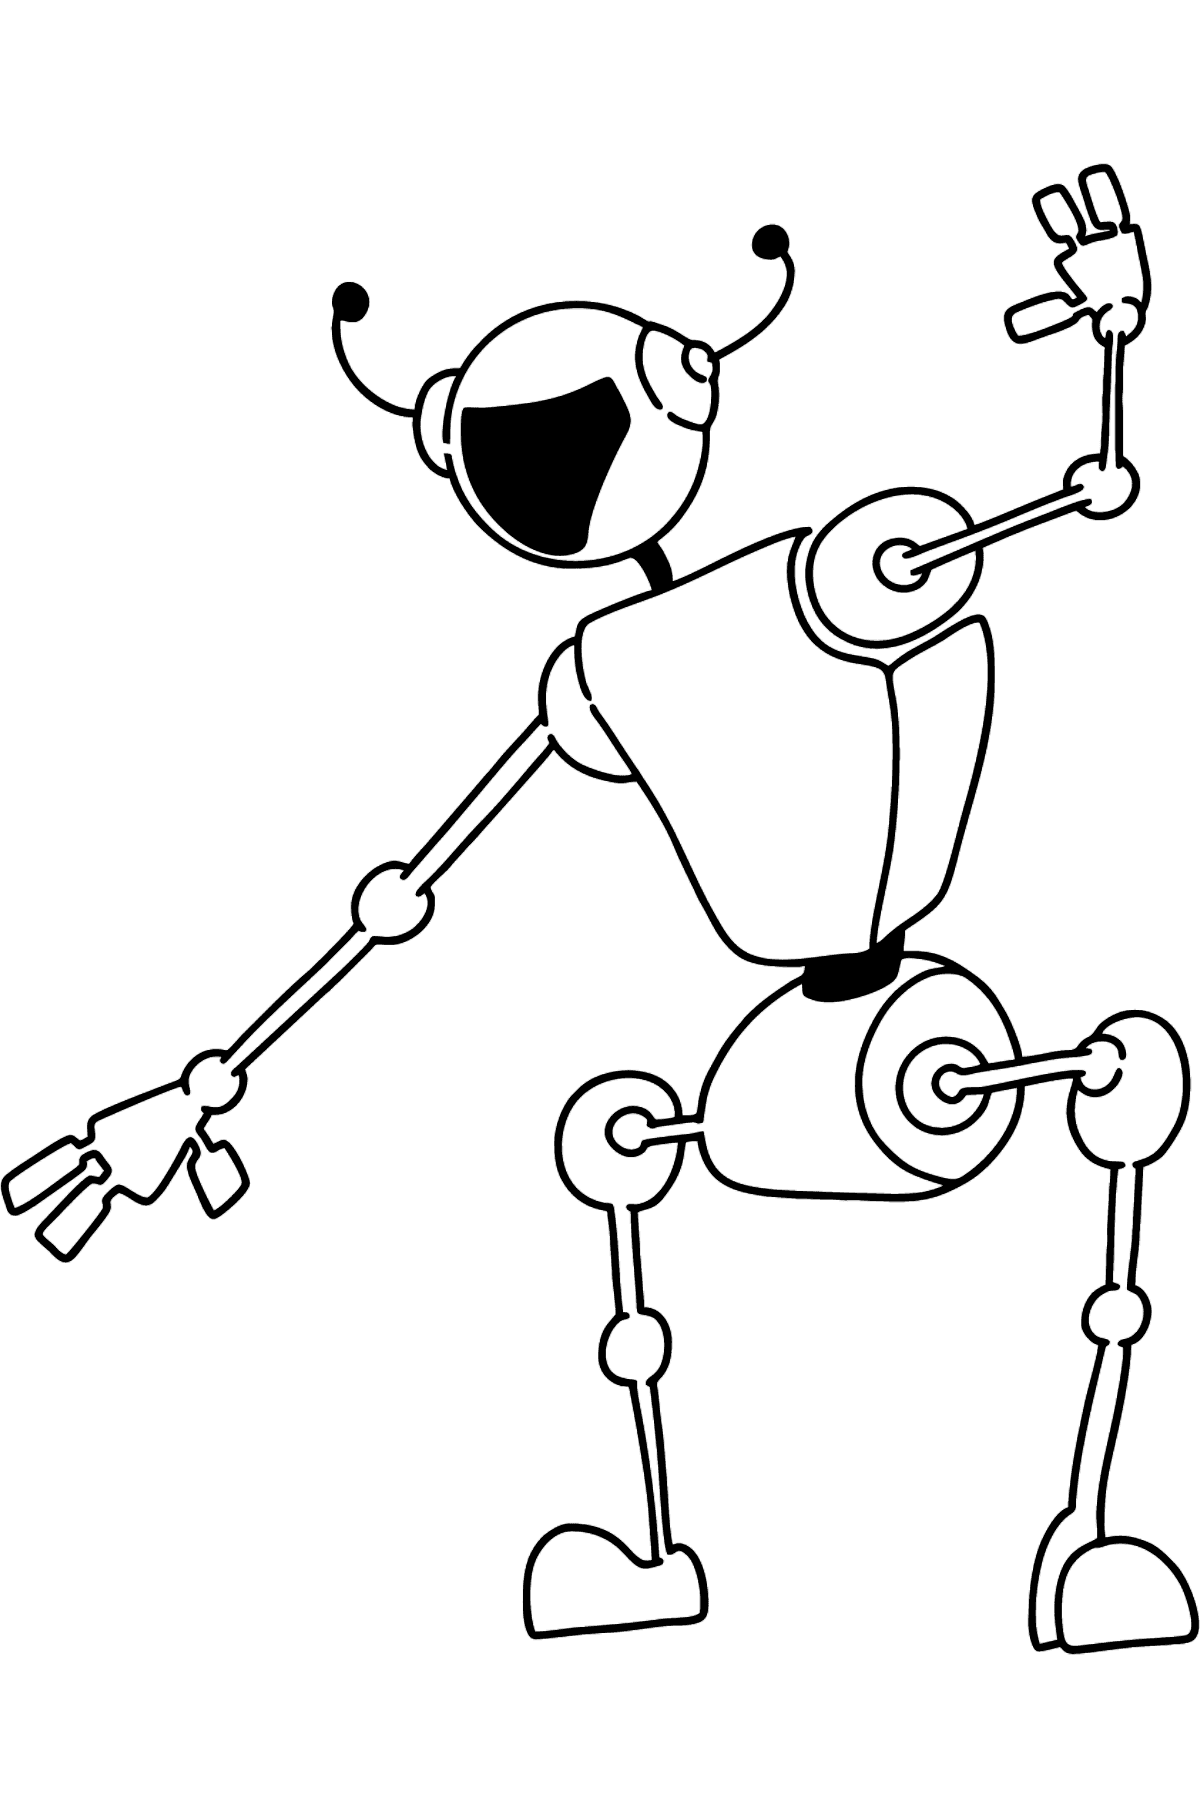 Desenho para colorir de Robot Dancing - Imagens para Colorir para Crianças